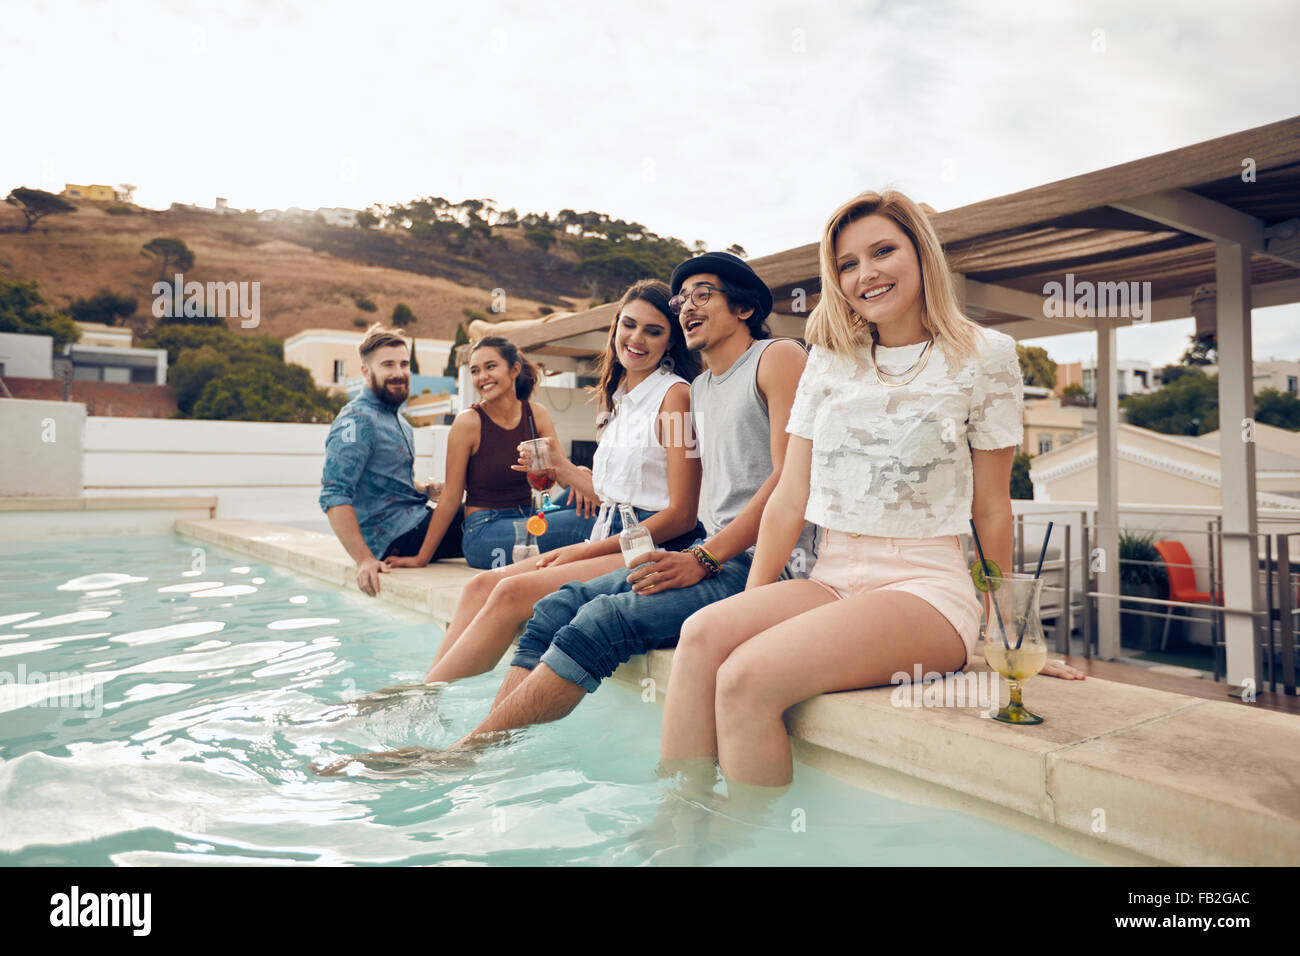 Smiling young woman looking at camera avec ses amis assis sur le bord de piscine. Les jeunes bénéficiant d'rooftop party Banque D'Images